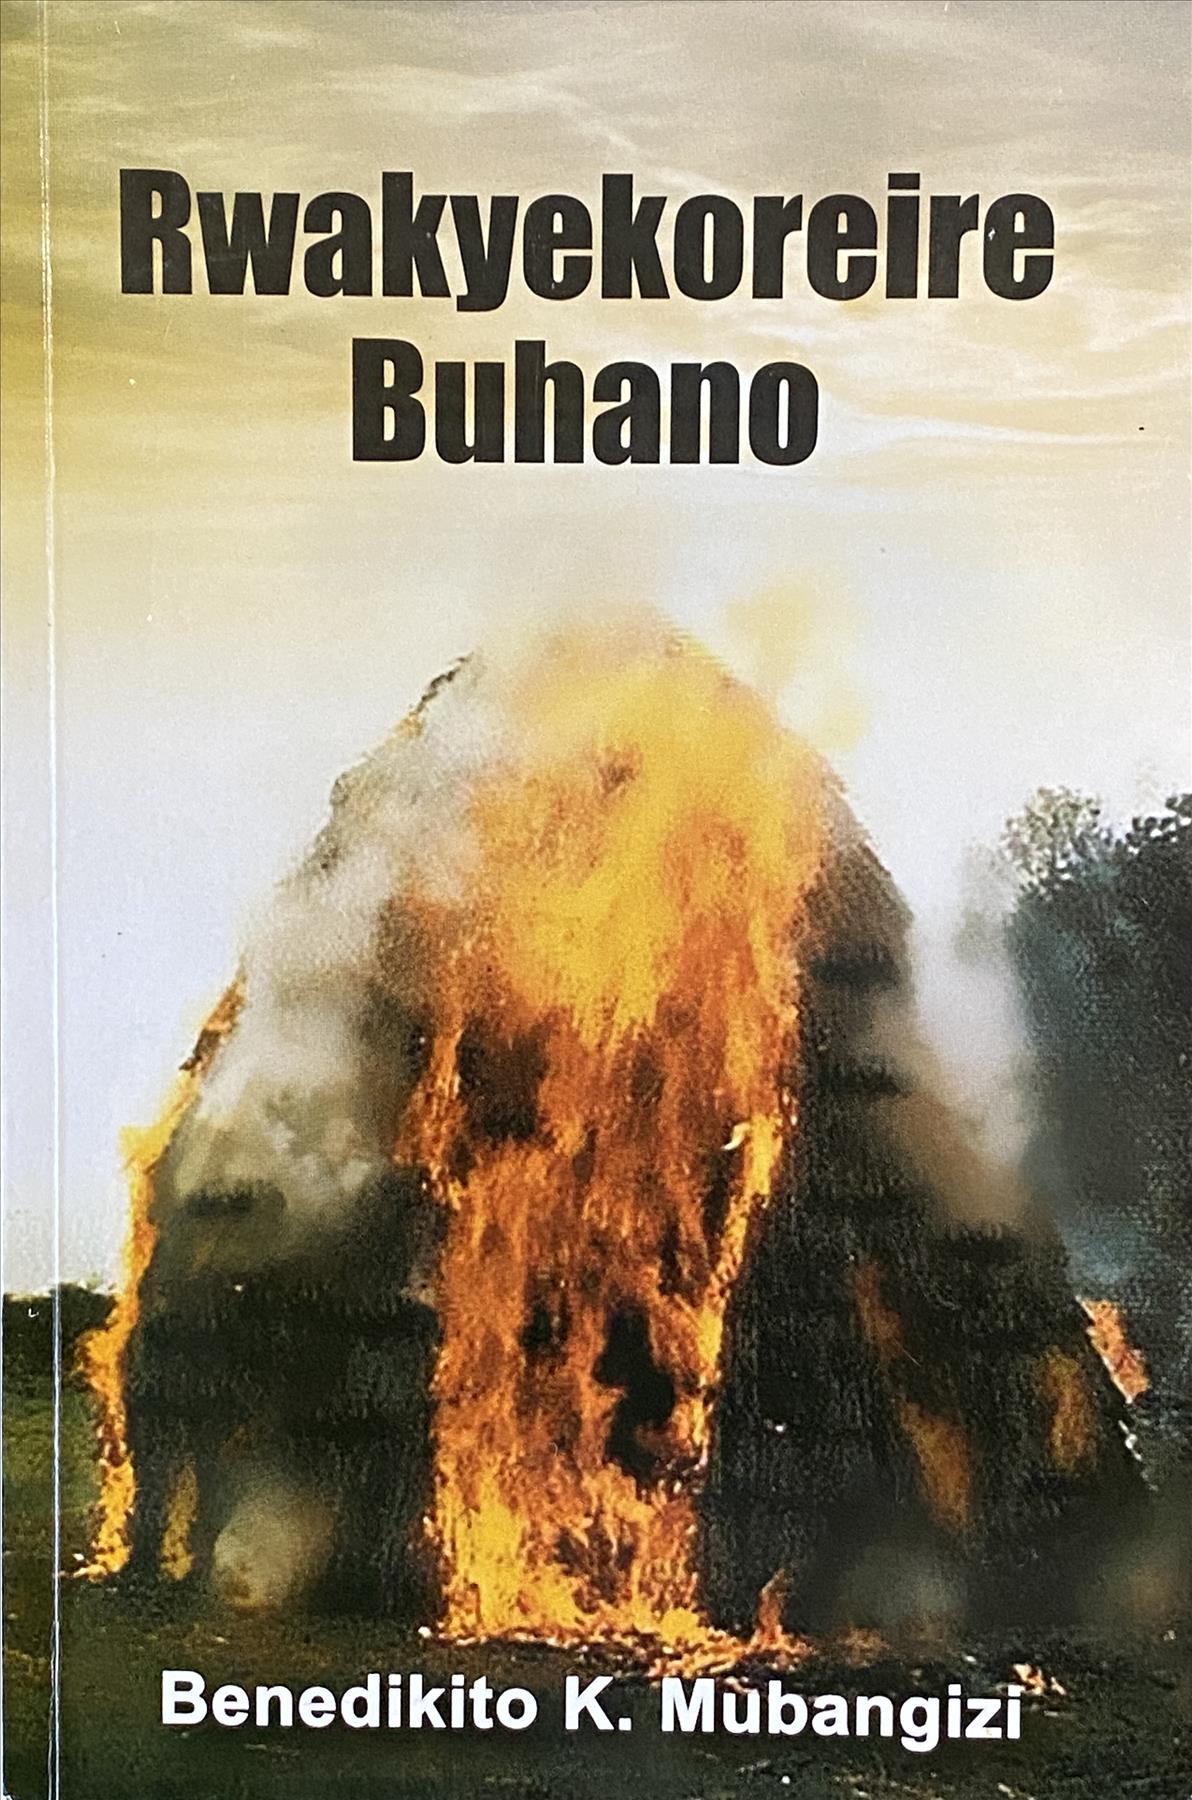 Rwakyekoreire Buhano: An outstanding novel in Runyankore  By Benedikito K. Mubangizi